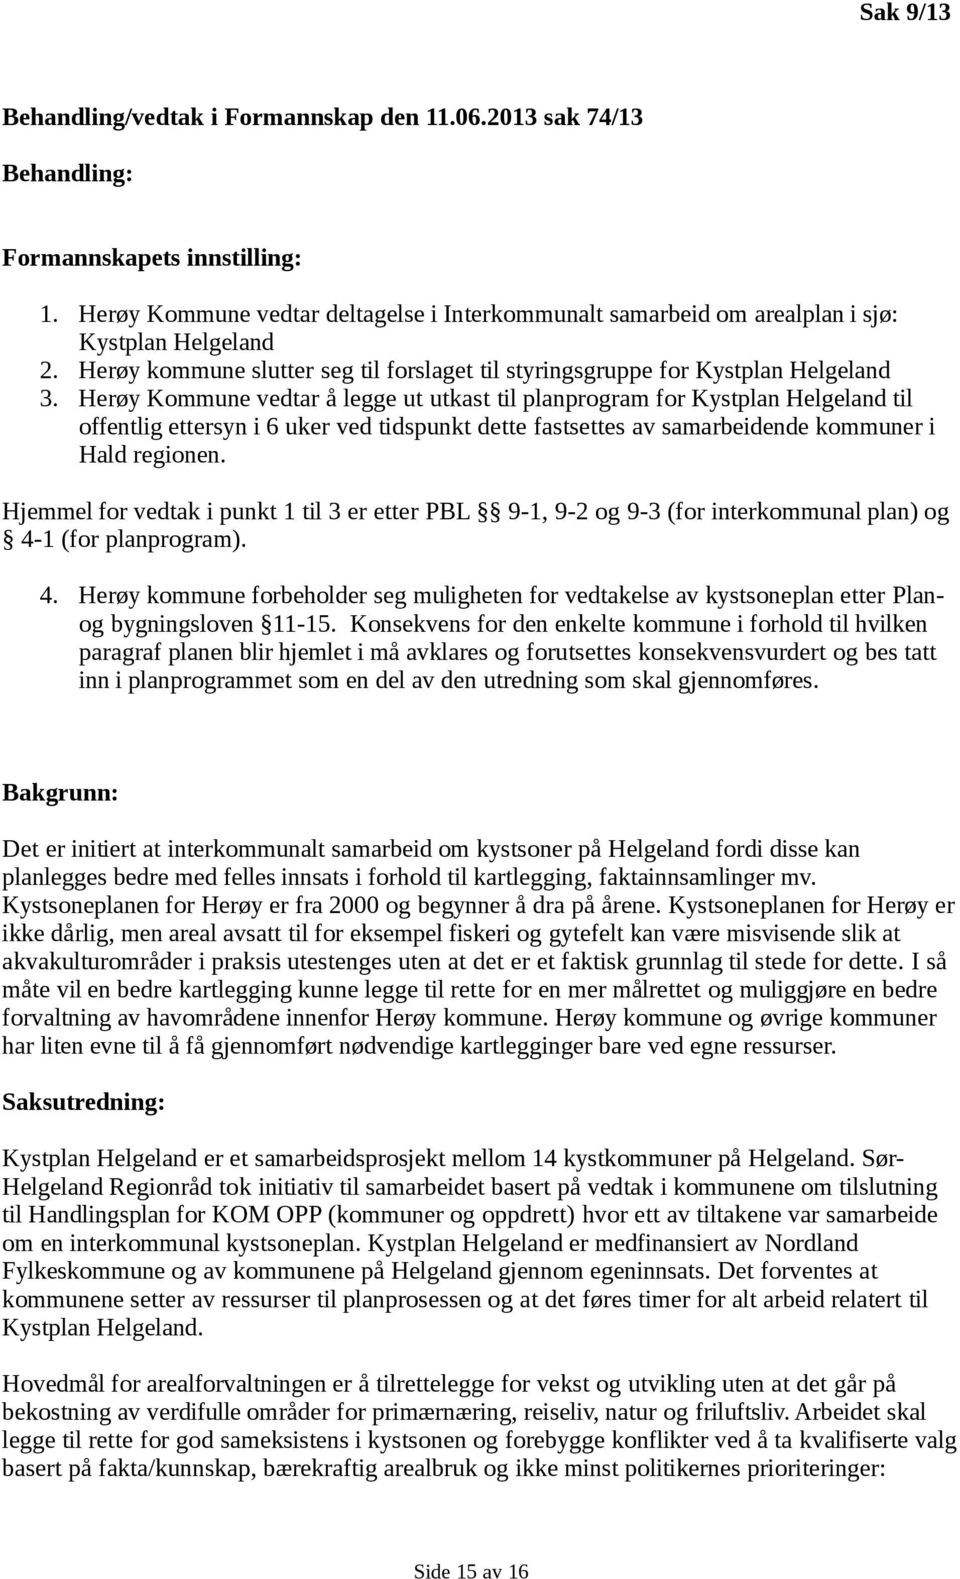 Herøy Kommune vedtar å legge ut utkast til planprogram for Kystplan Helgeland til offentlig ettersyn i 6 uker ved tidspunkt dette fastsettes av samarbeidende kommuner i Hald regionen.